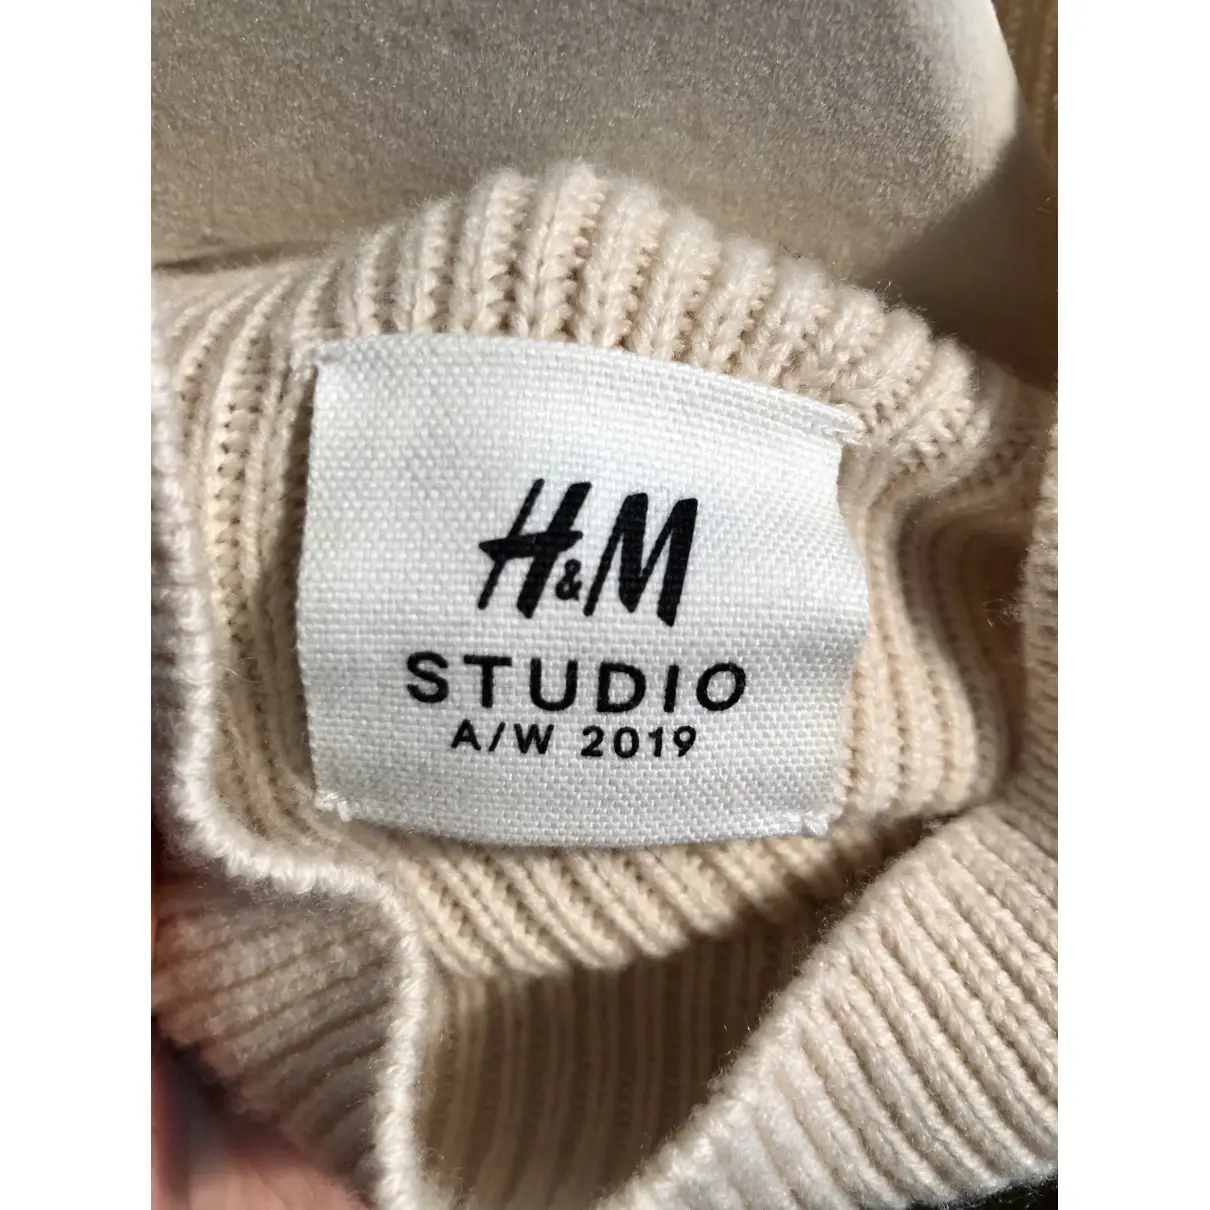 Wool jumper H&M Studio